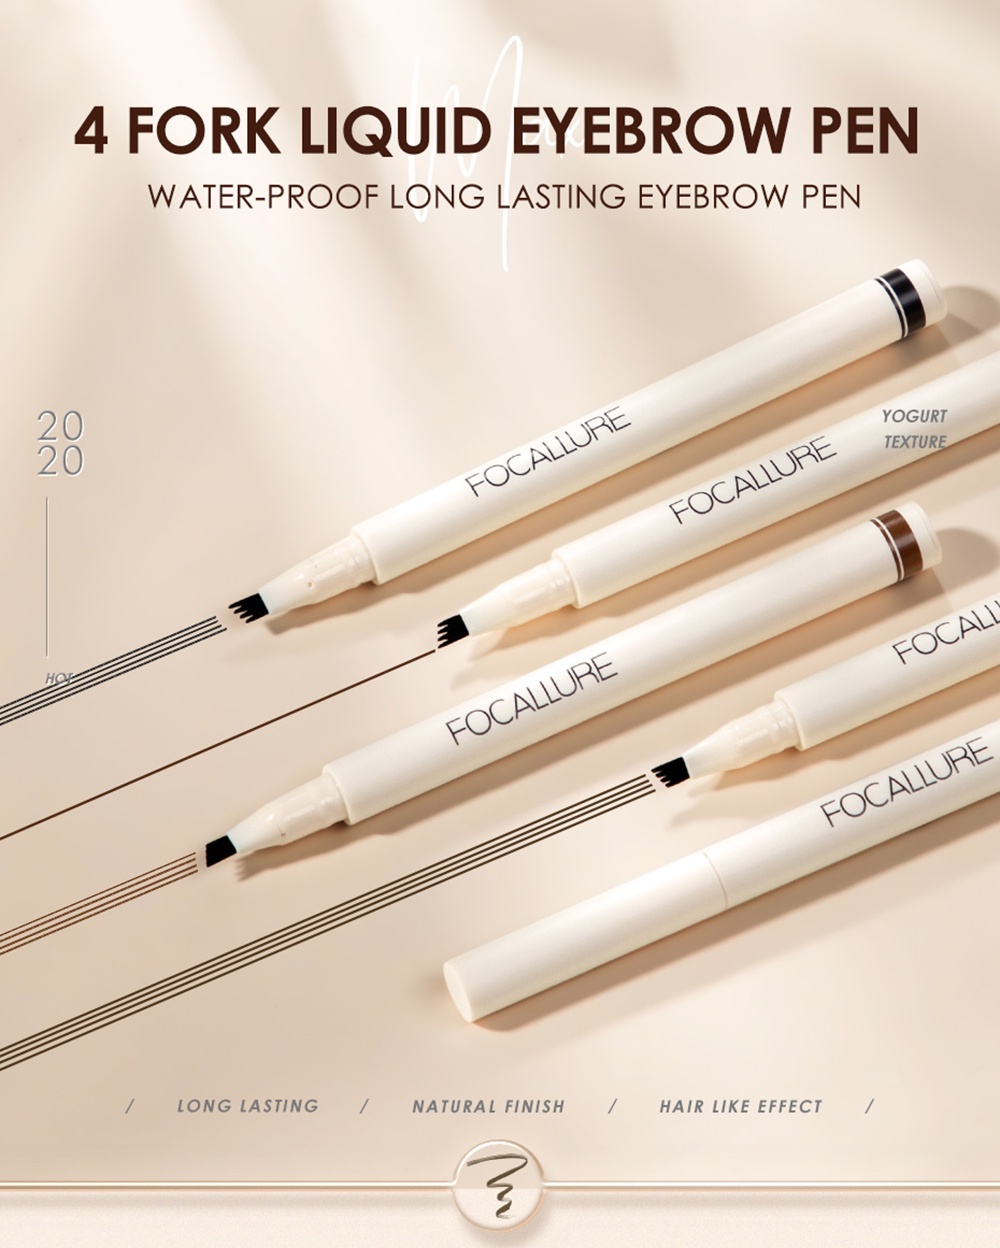 ภาพประกอบของ Focallure ดินสอเขียนคิ้ว กันน้ำ ติดทนนาน ป้องกันการลบเลือน ดินสอเขียนคิ้ว